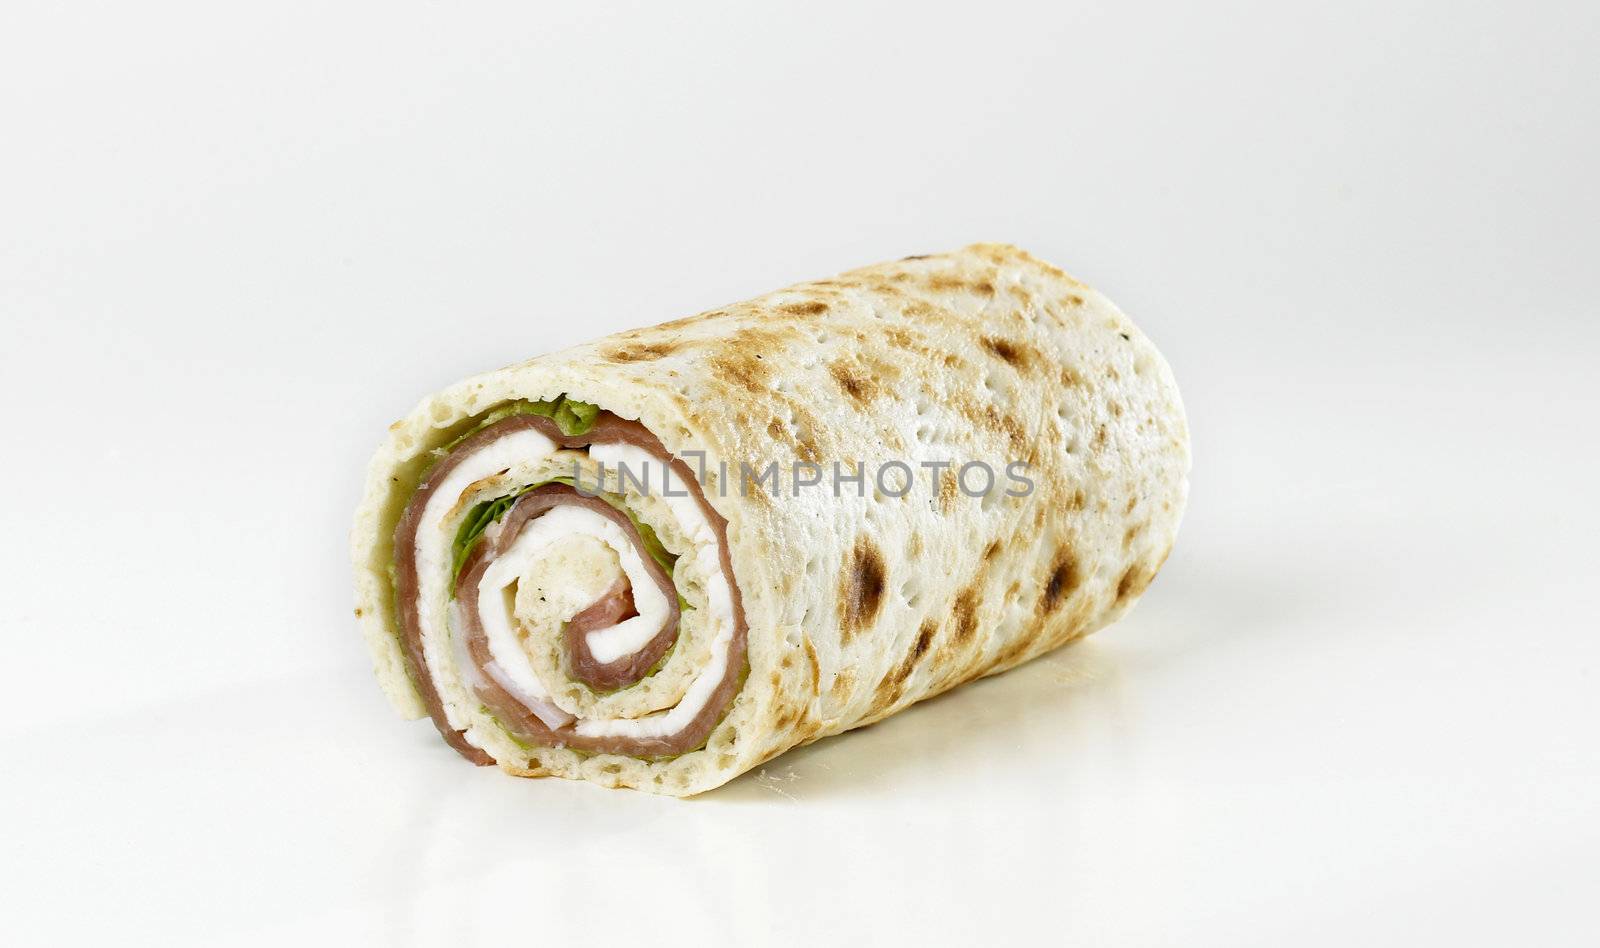 Rolled Bread, Mozzarella Cheese, green salad and Prosciutto Ham